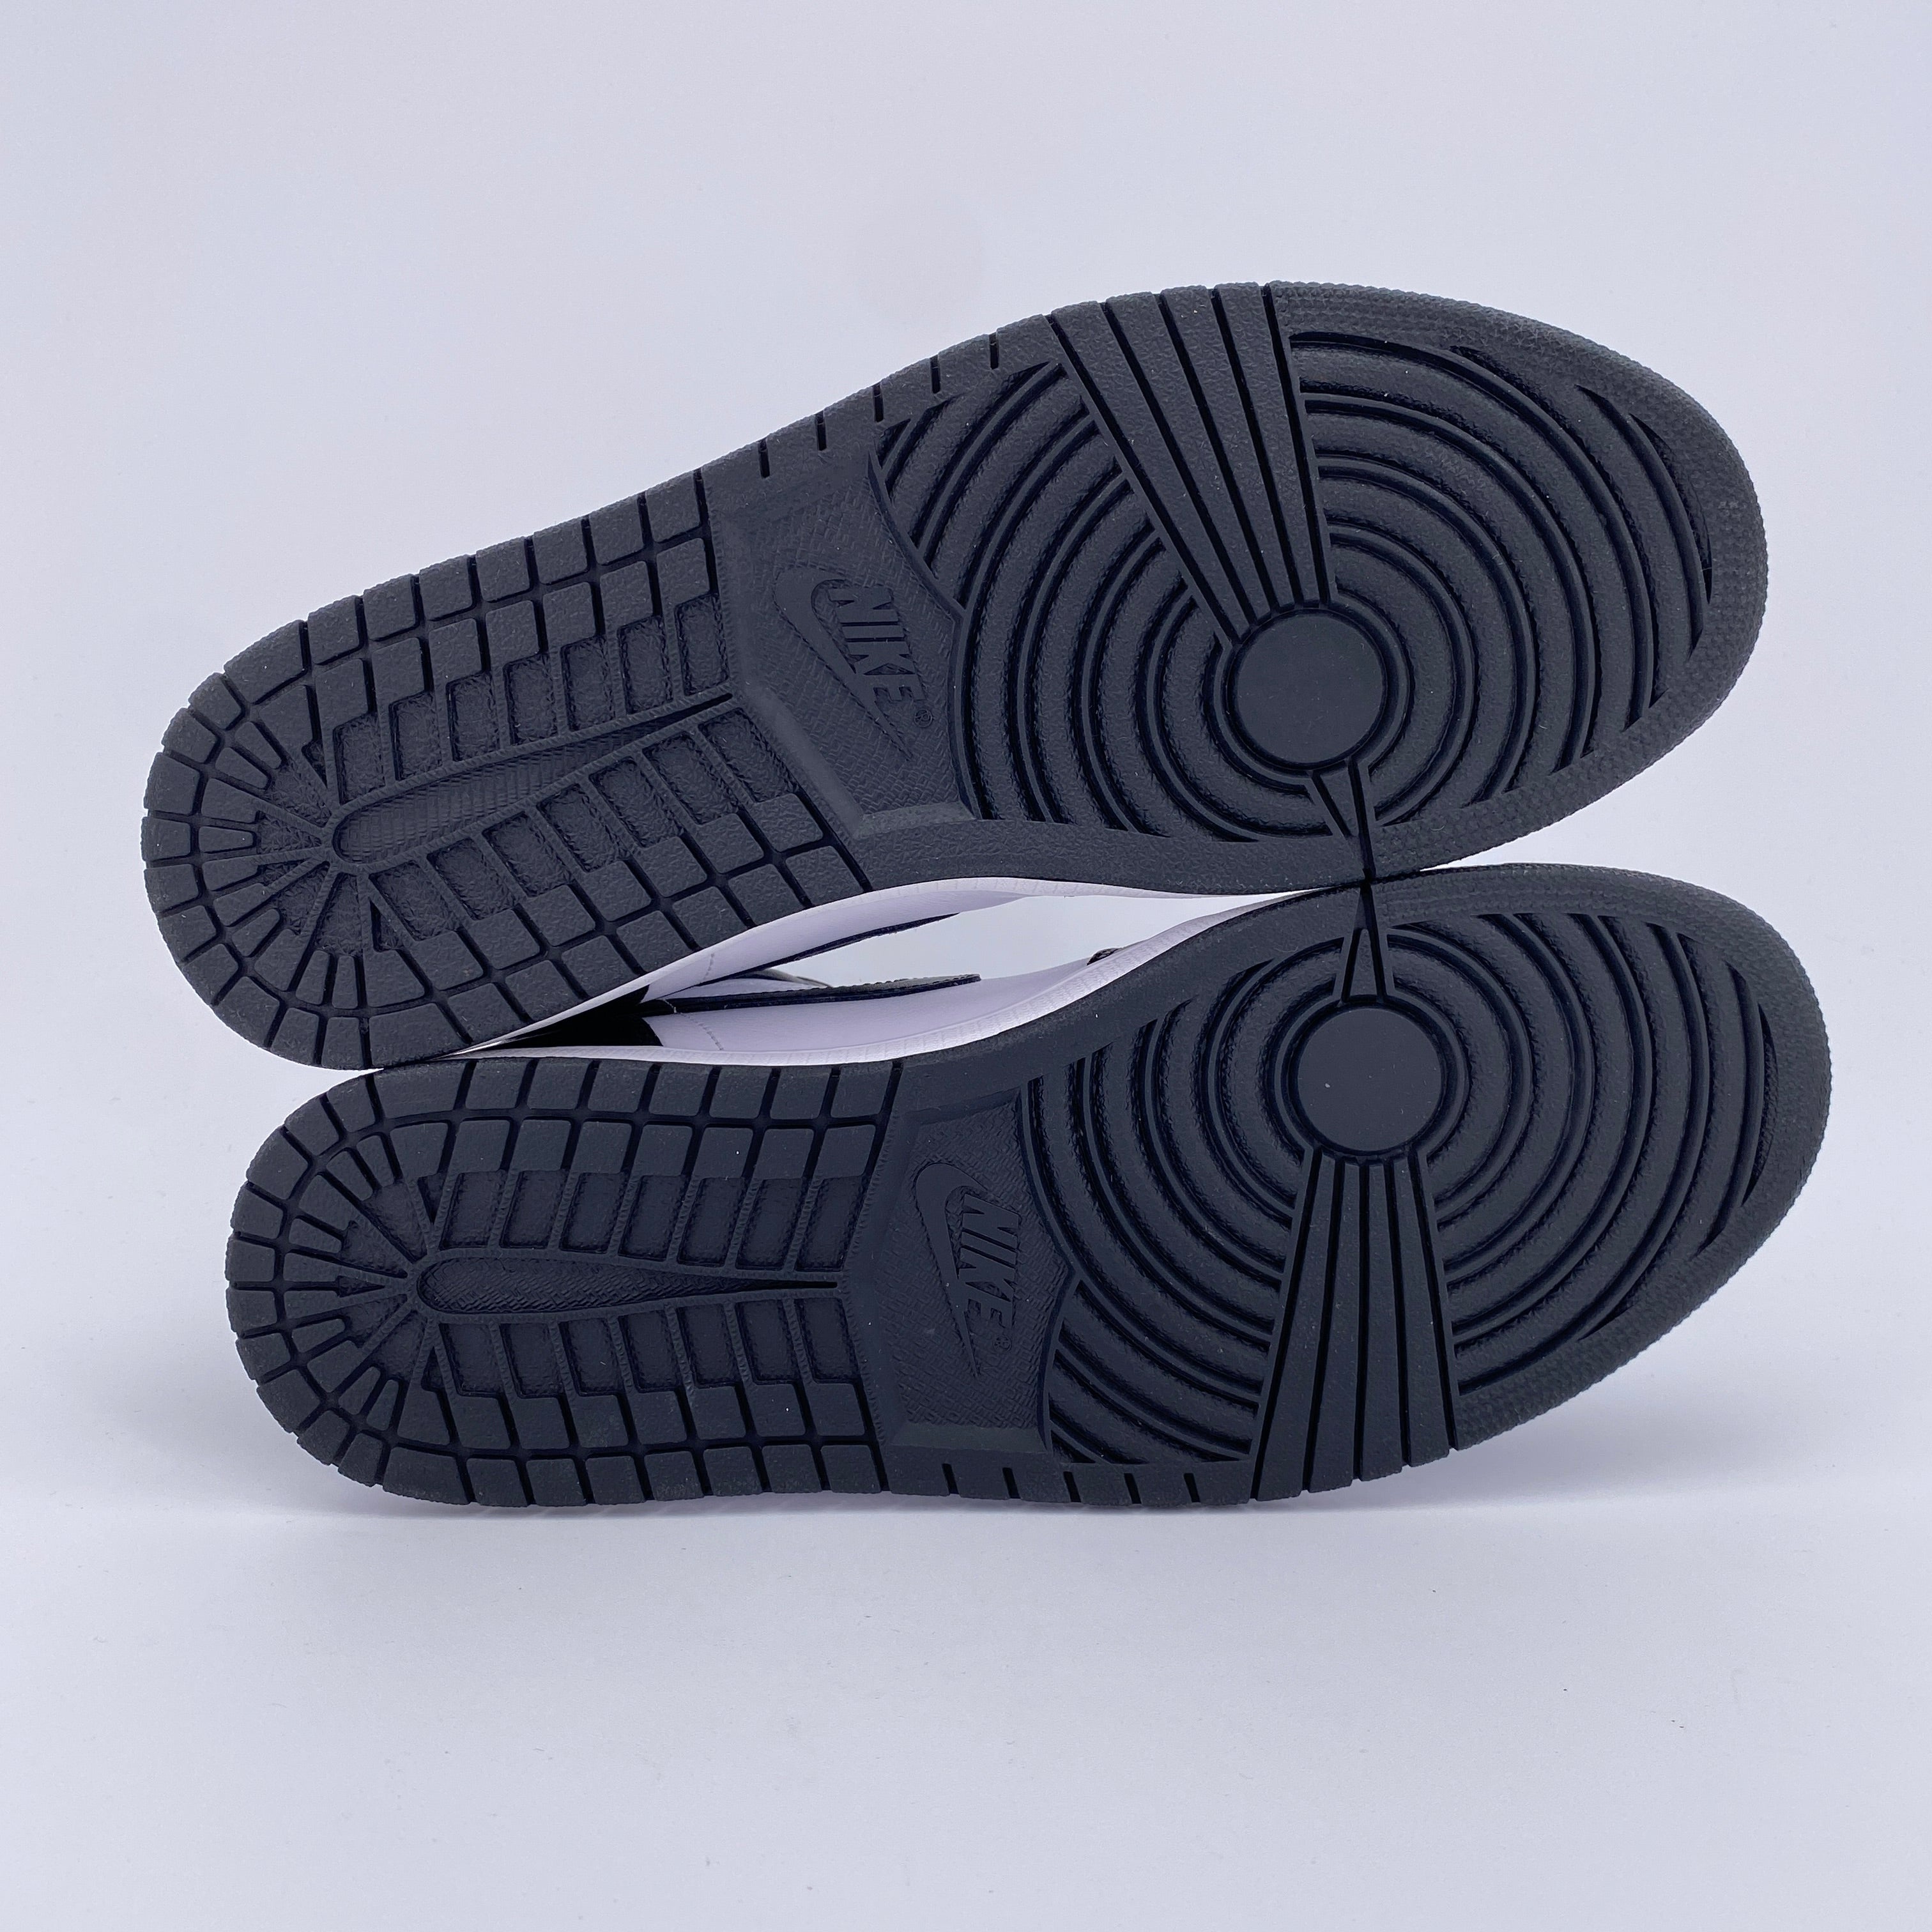 Air Jordan 1 Retro High OG "Black White" 2014 Used Size 11.5